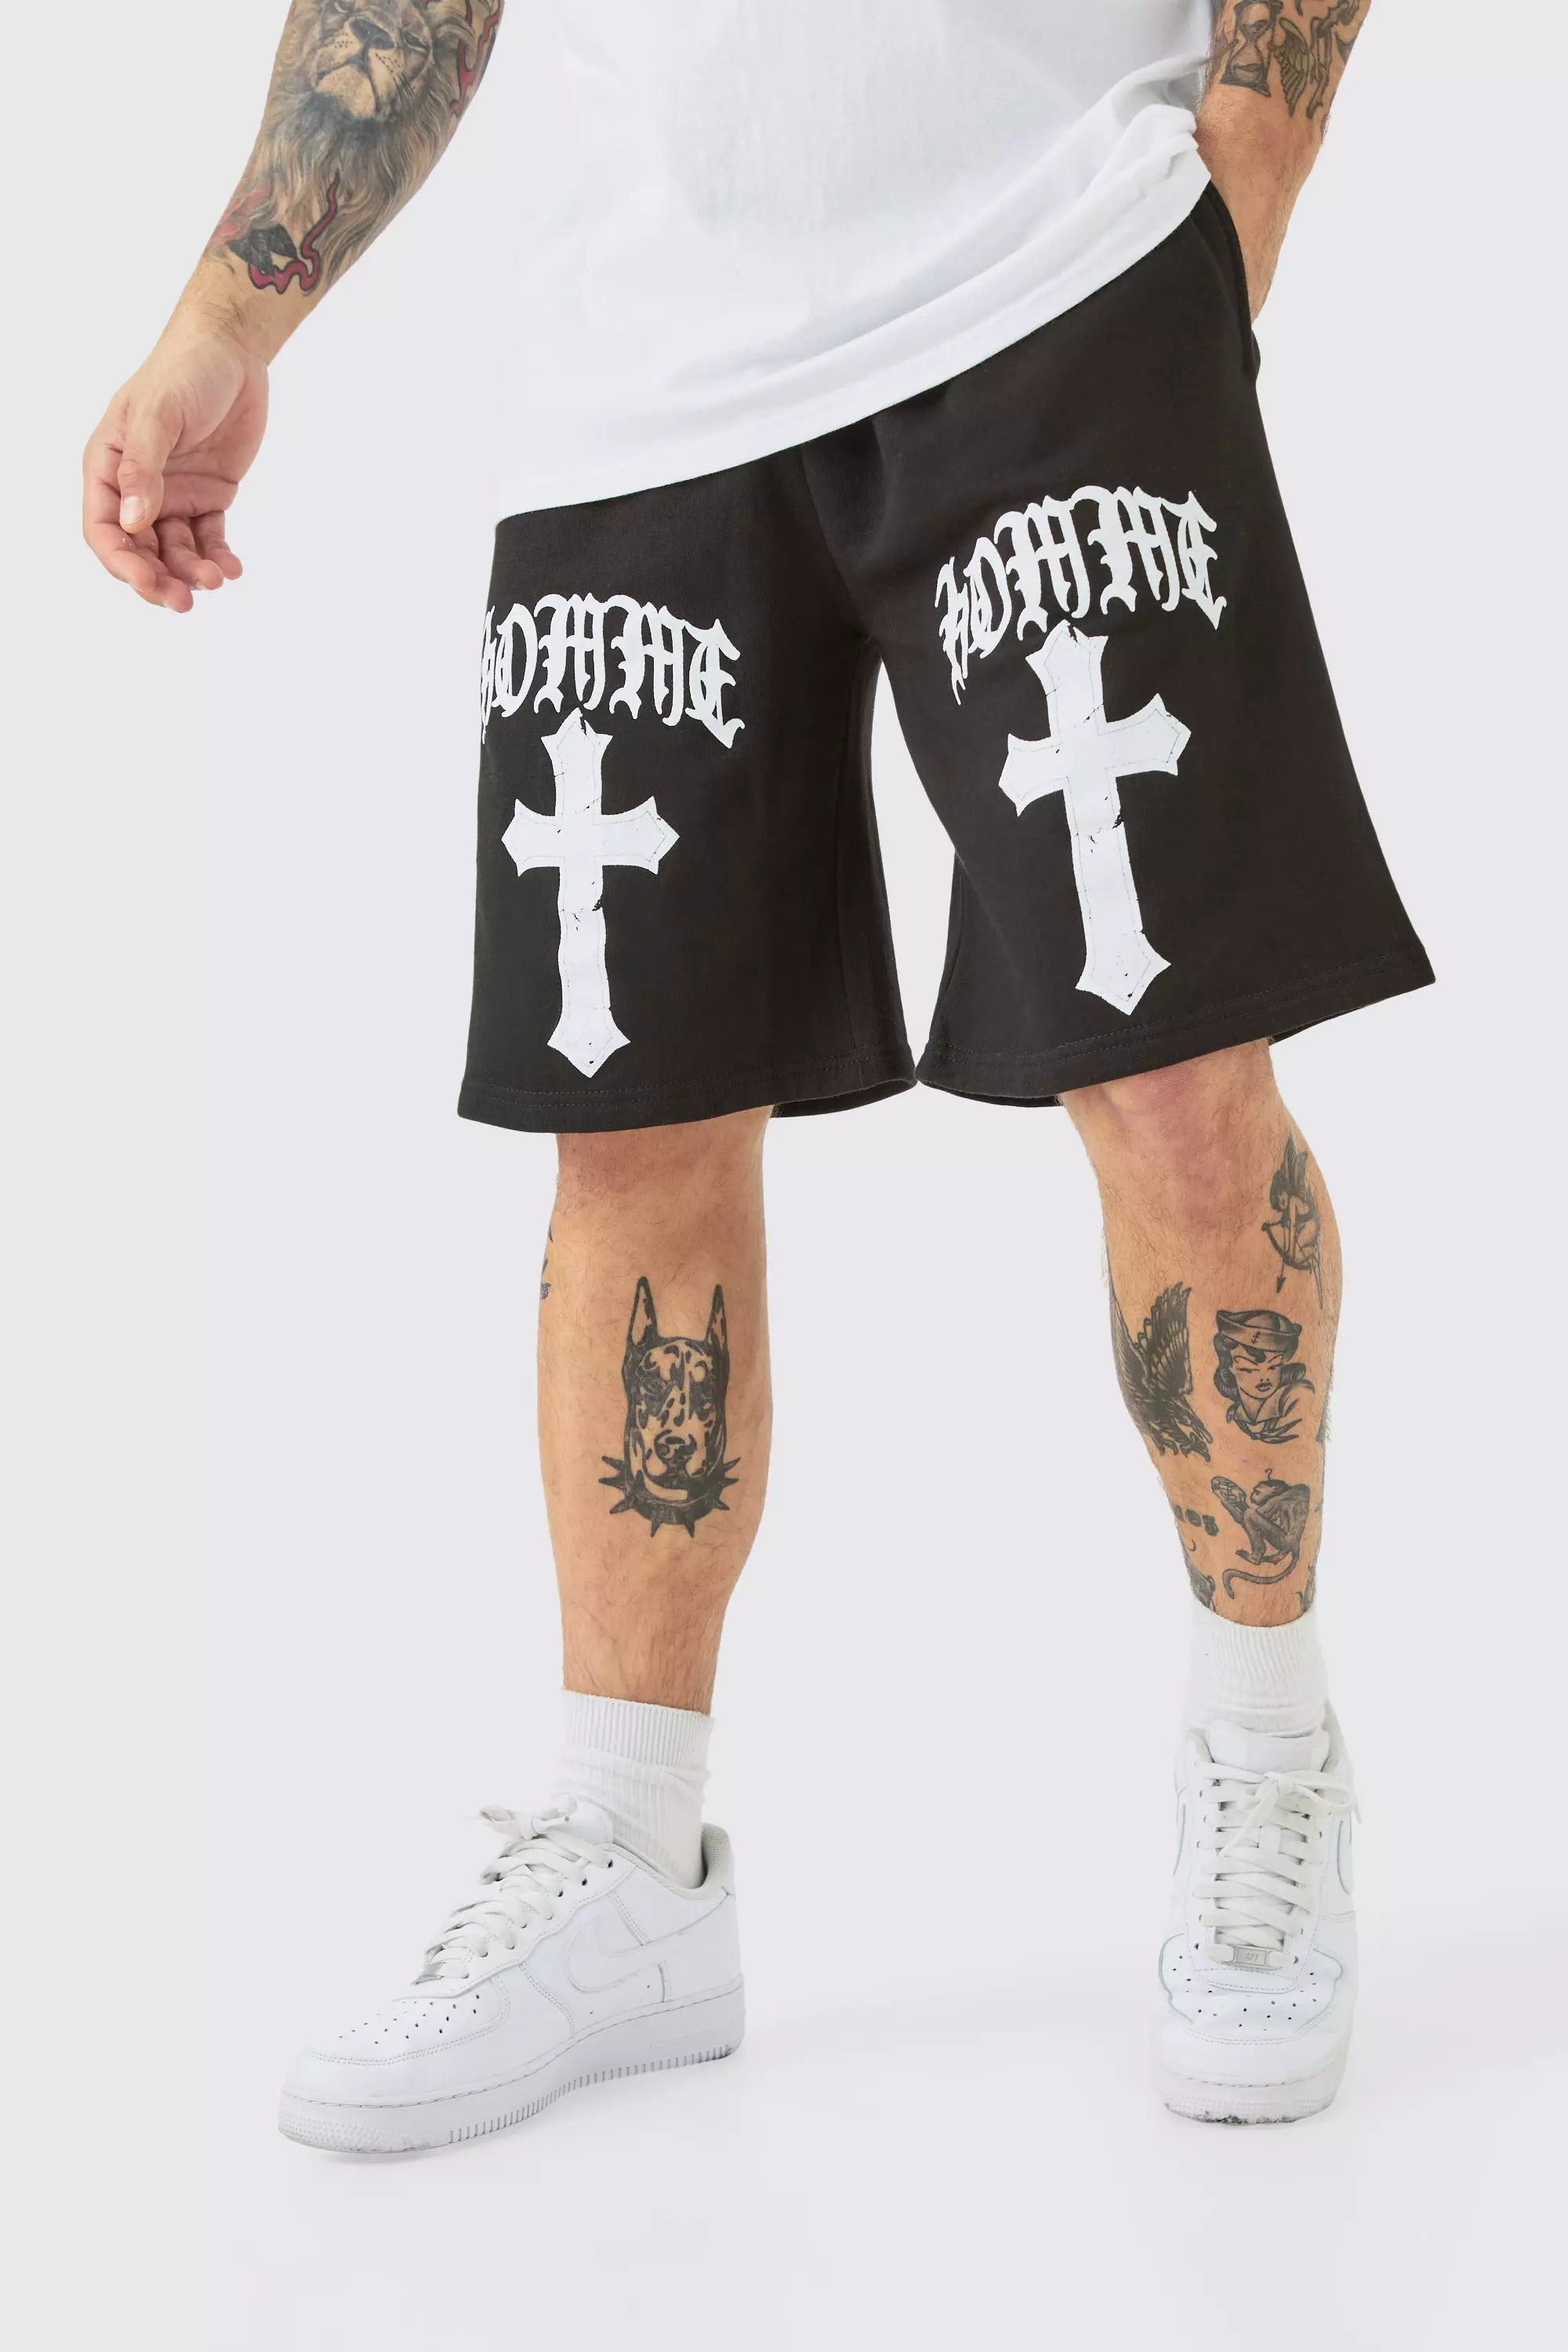 Oversized Homme Gothic Cross Print Short Black